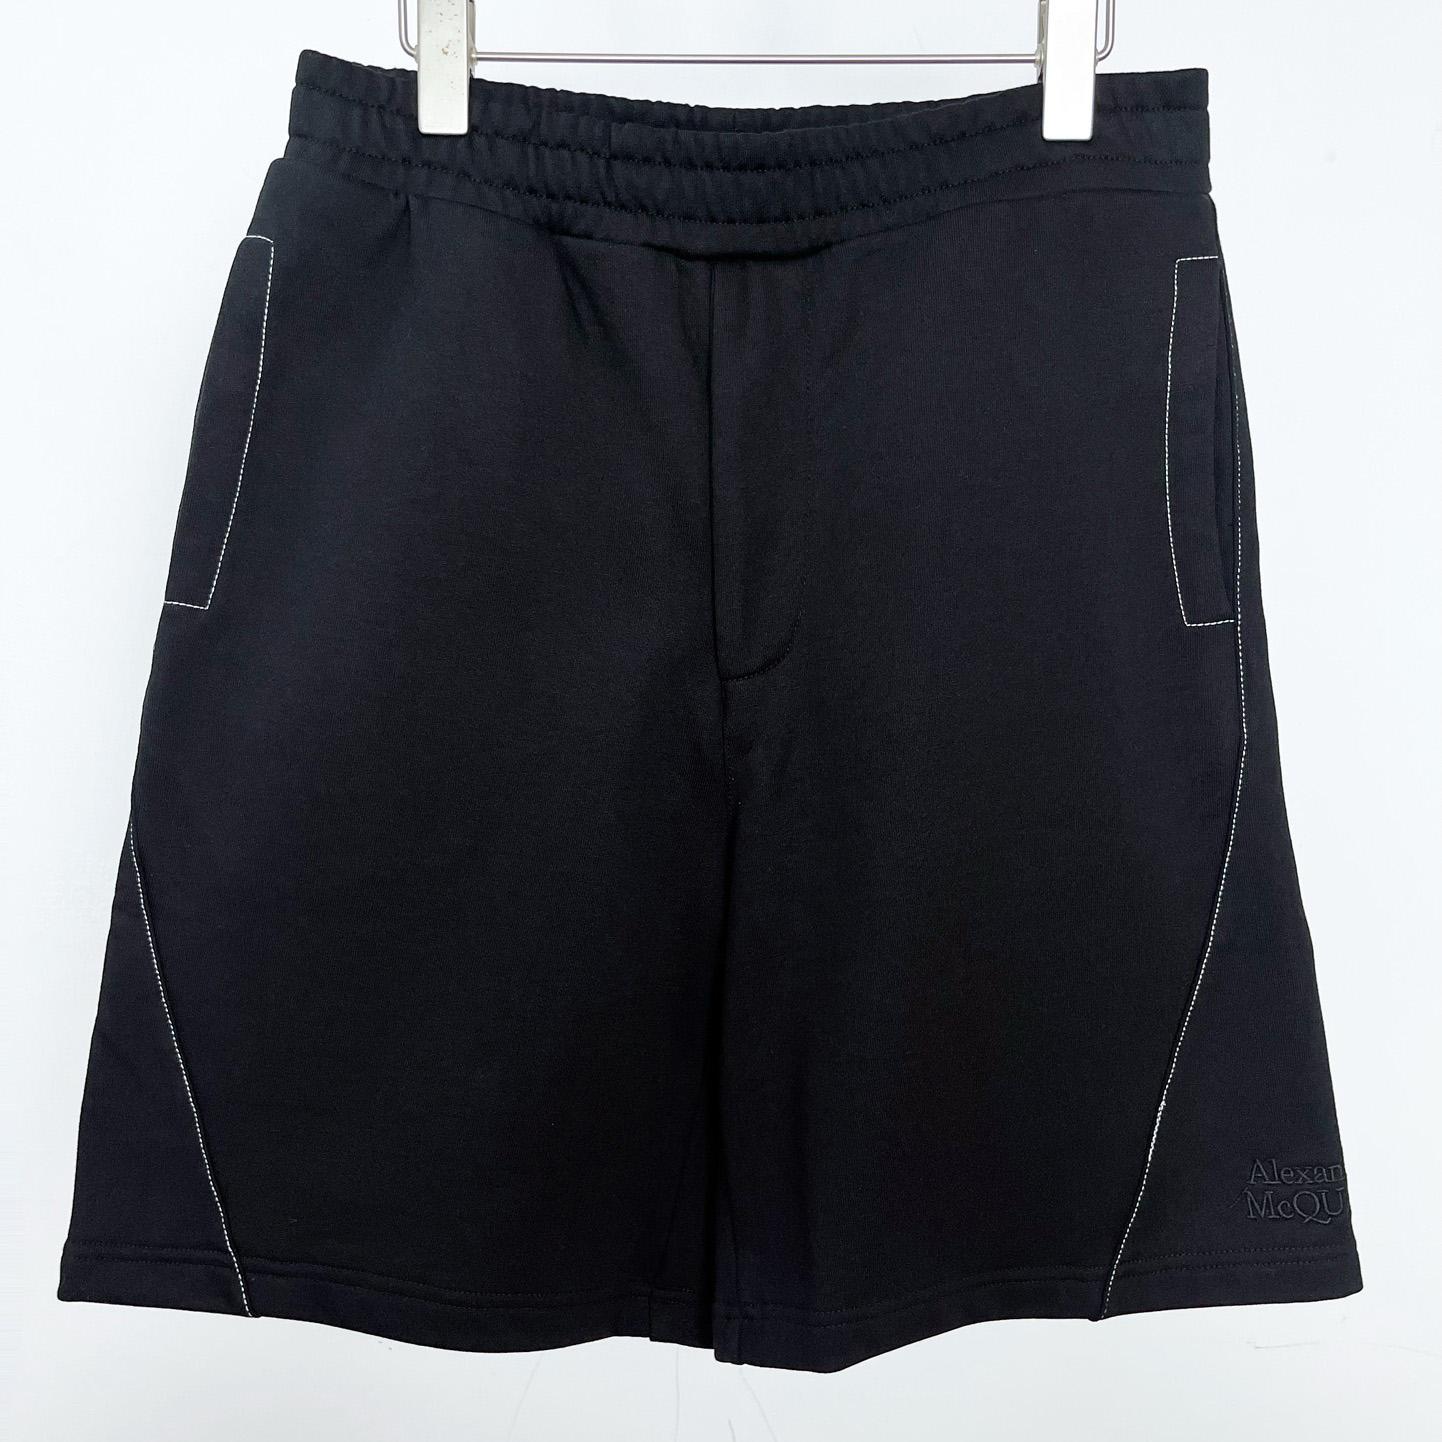 Alexander Mqueen Sporty shorts - DesignerGu